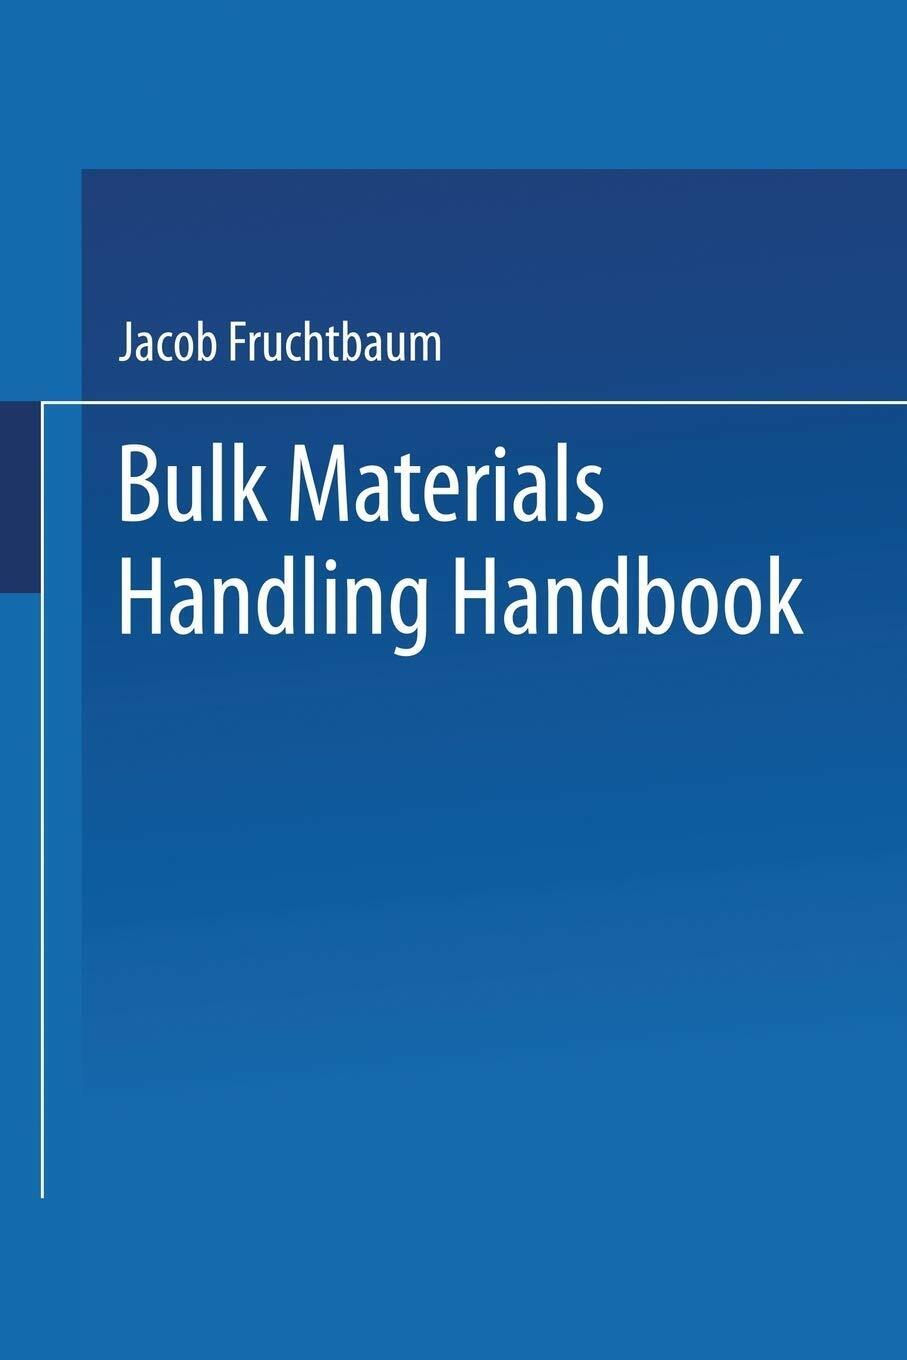 Bulk Materials Handling Handbook - Jacob Fruchtbaum - Springer, 2013